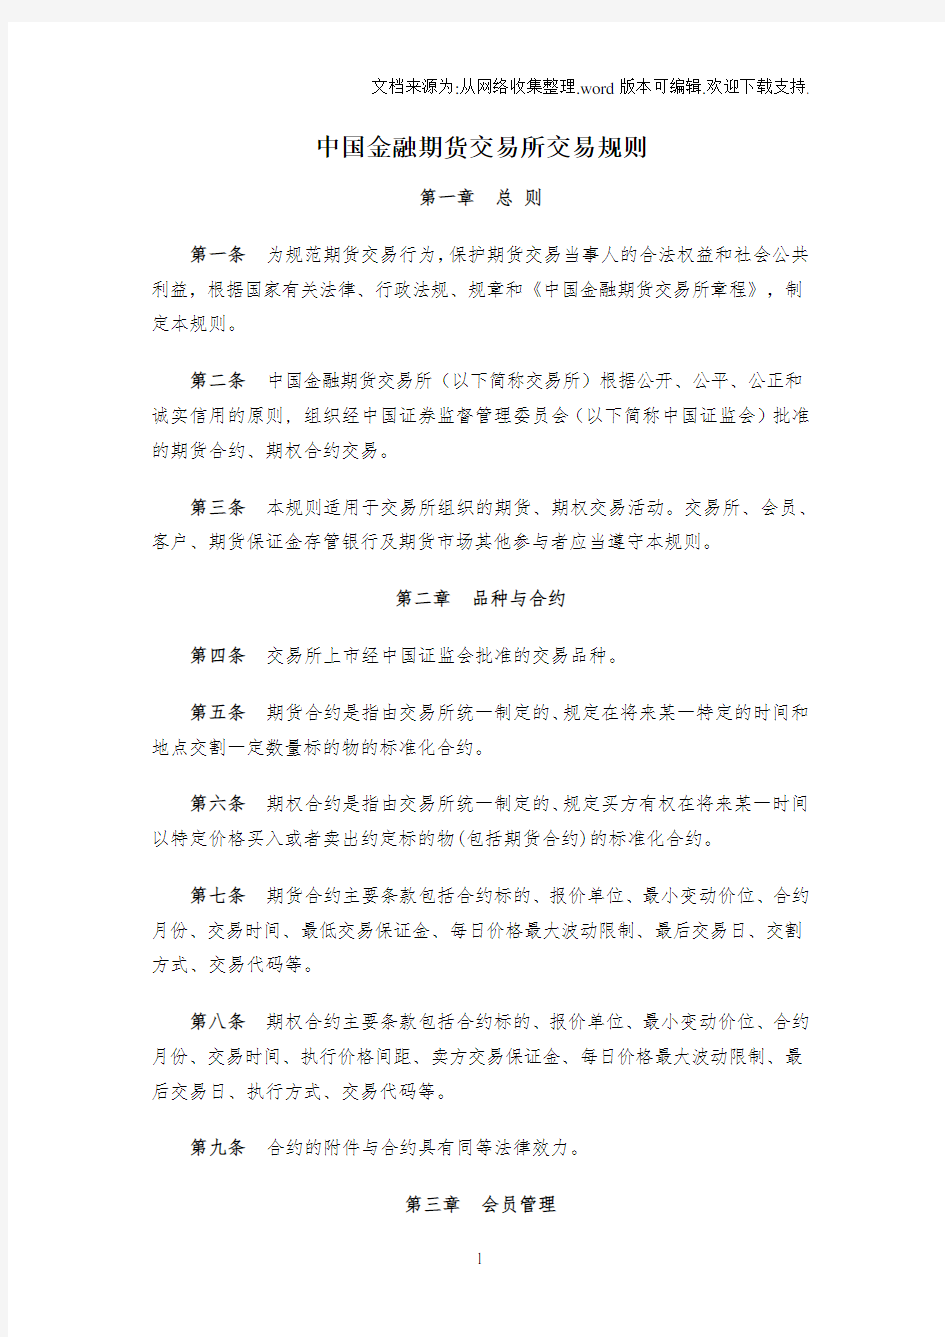 中国金融期货交易所交易规则(I)